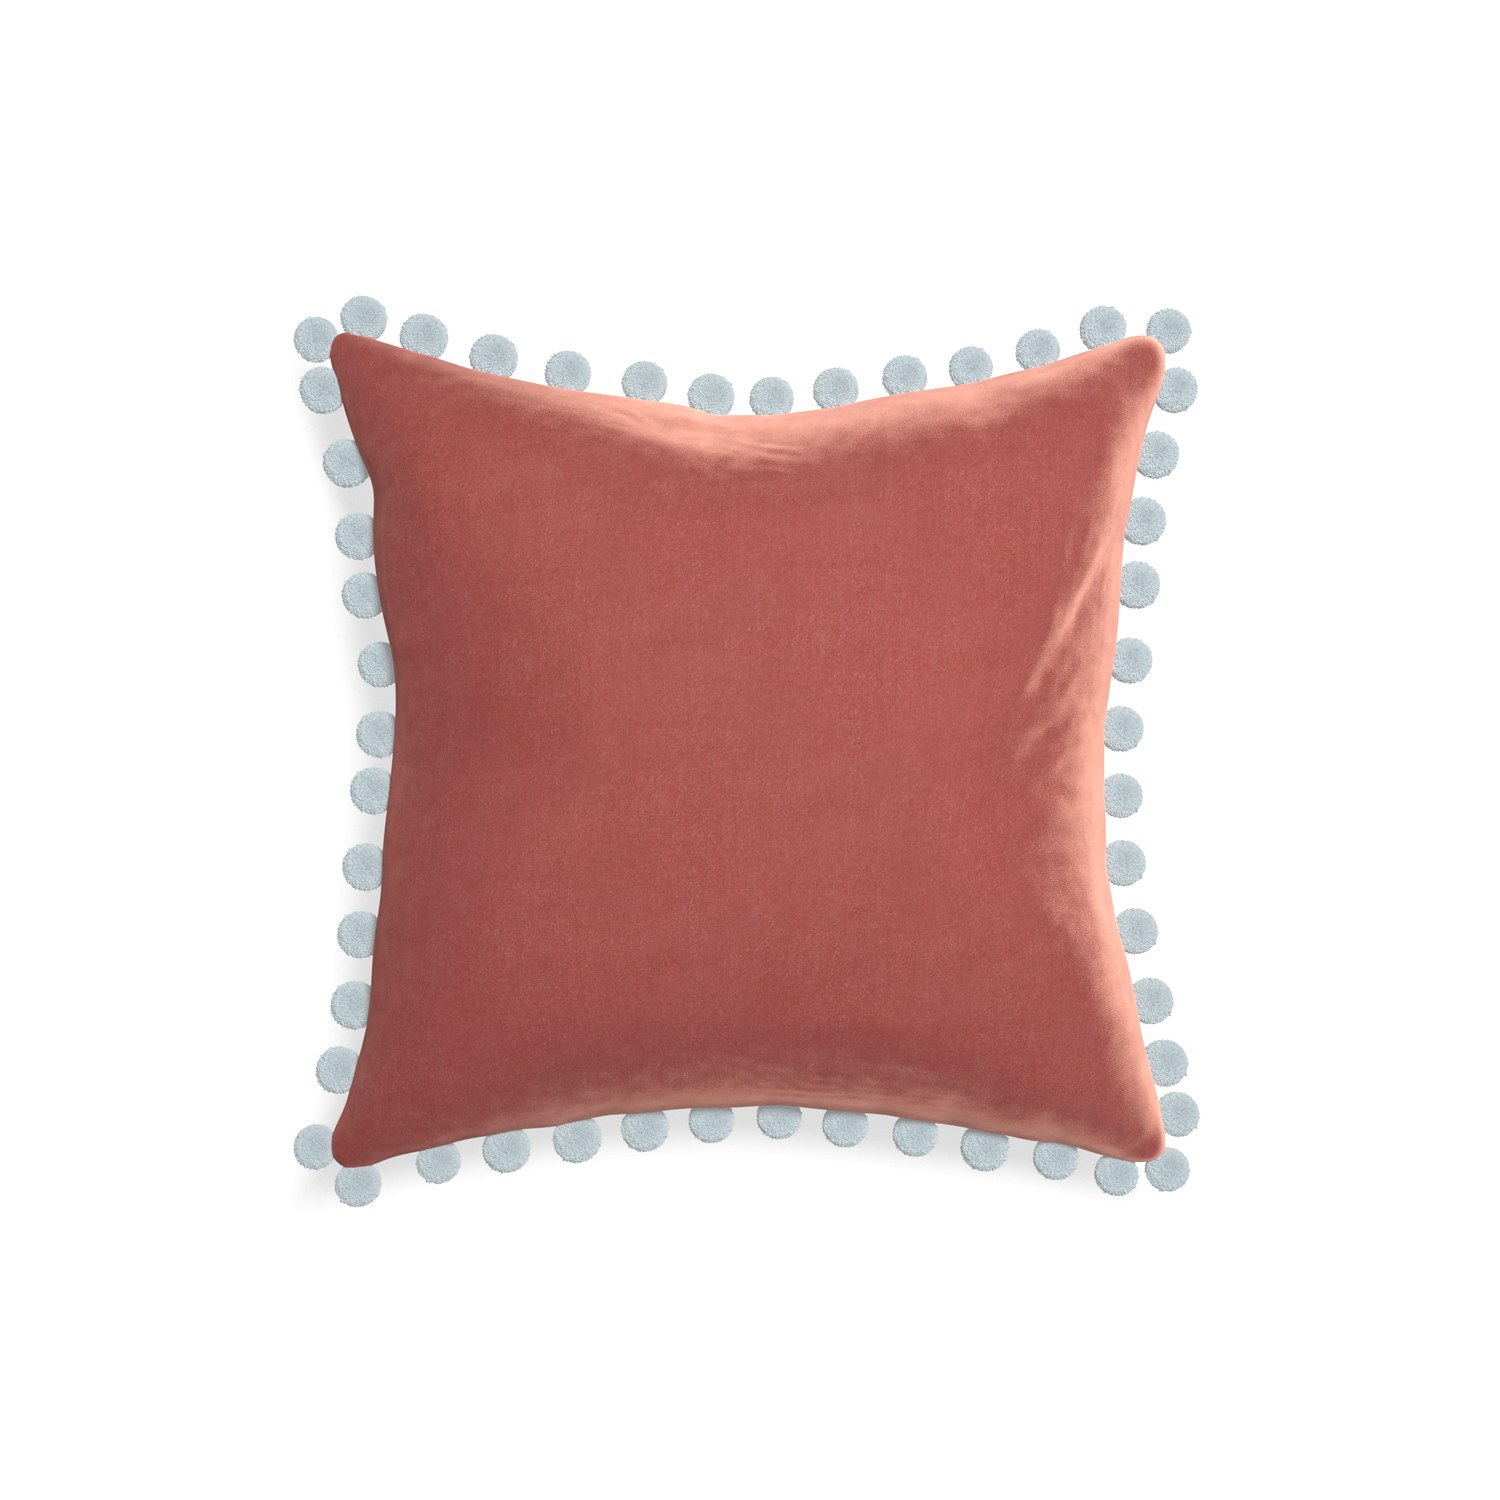 square coral velvet pillow with light blue pom poms